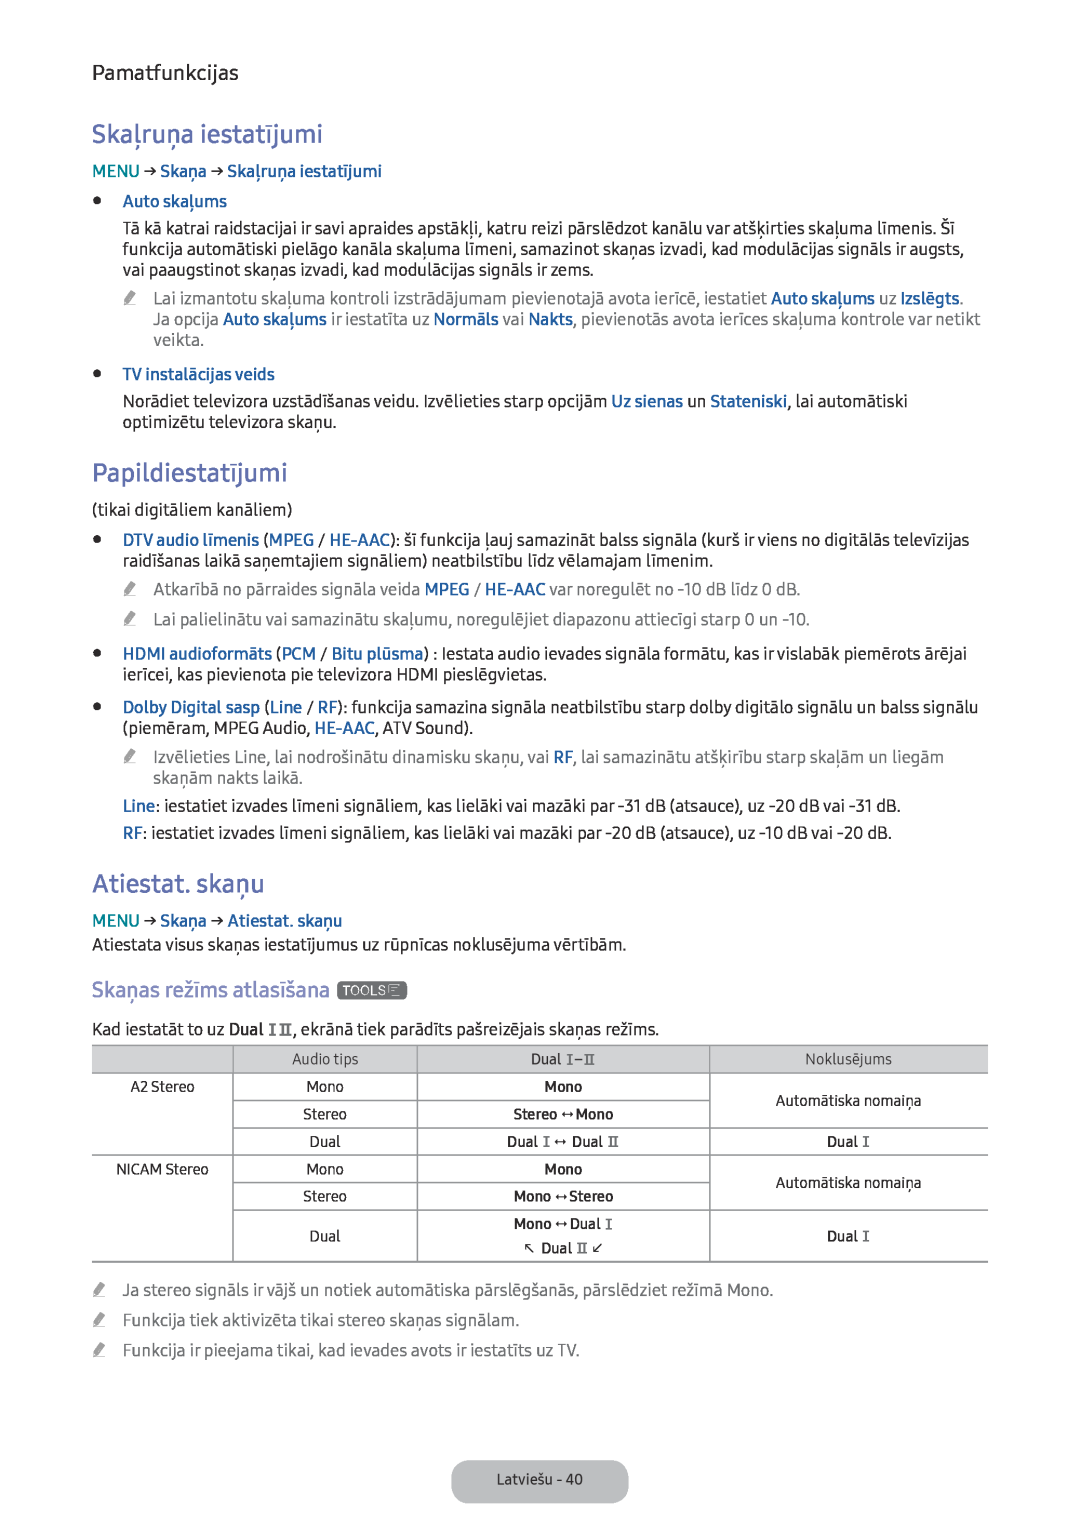 Samsung LV27F390FEWXEN manual Skaļruņa iestatījumi, Papildiestatījumi, Atiestat. skaņu, Skaņas režīms atlasīšana t 